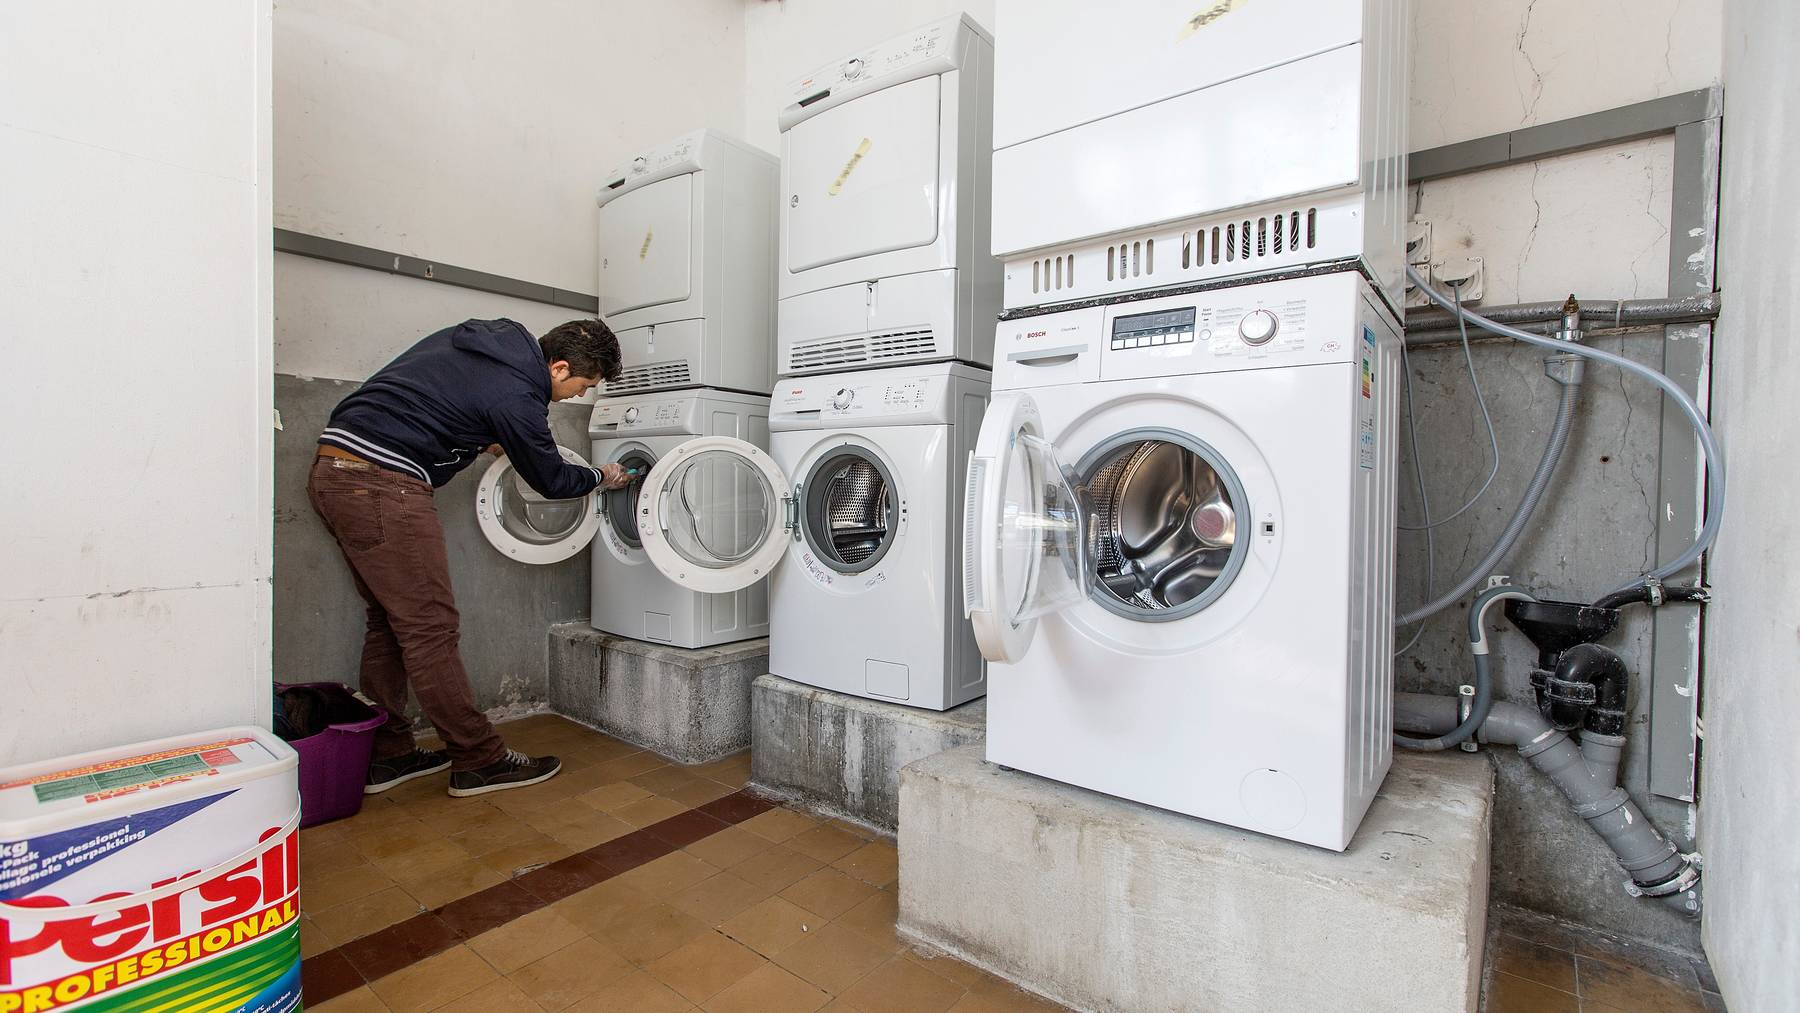 Die gemeinsame Waschmaschine sorgt bei einem Fünftel der Nachbarn für Ärger.